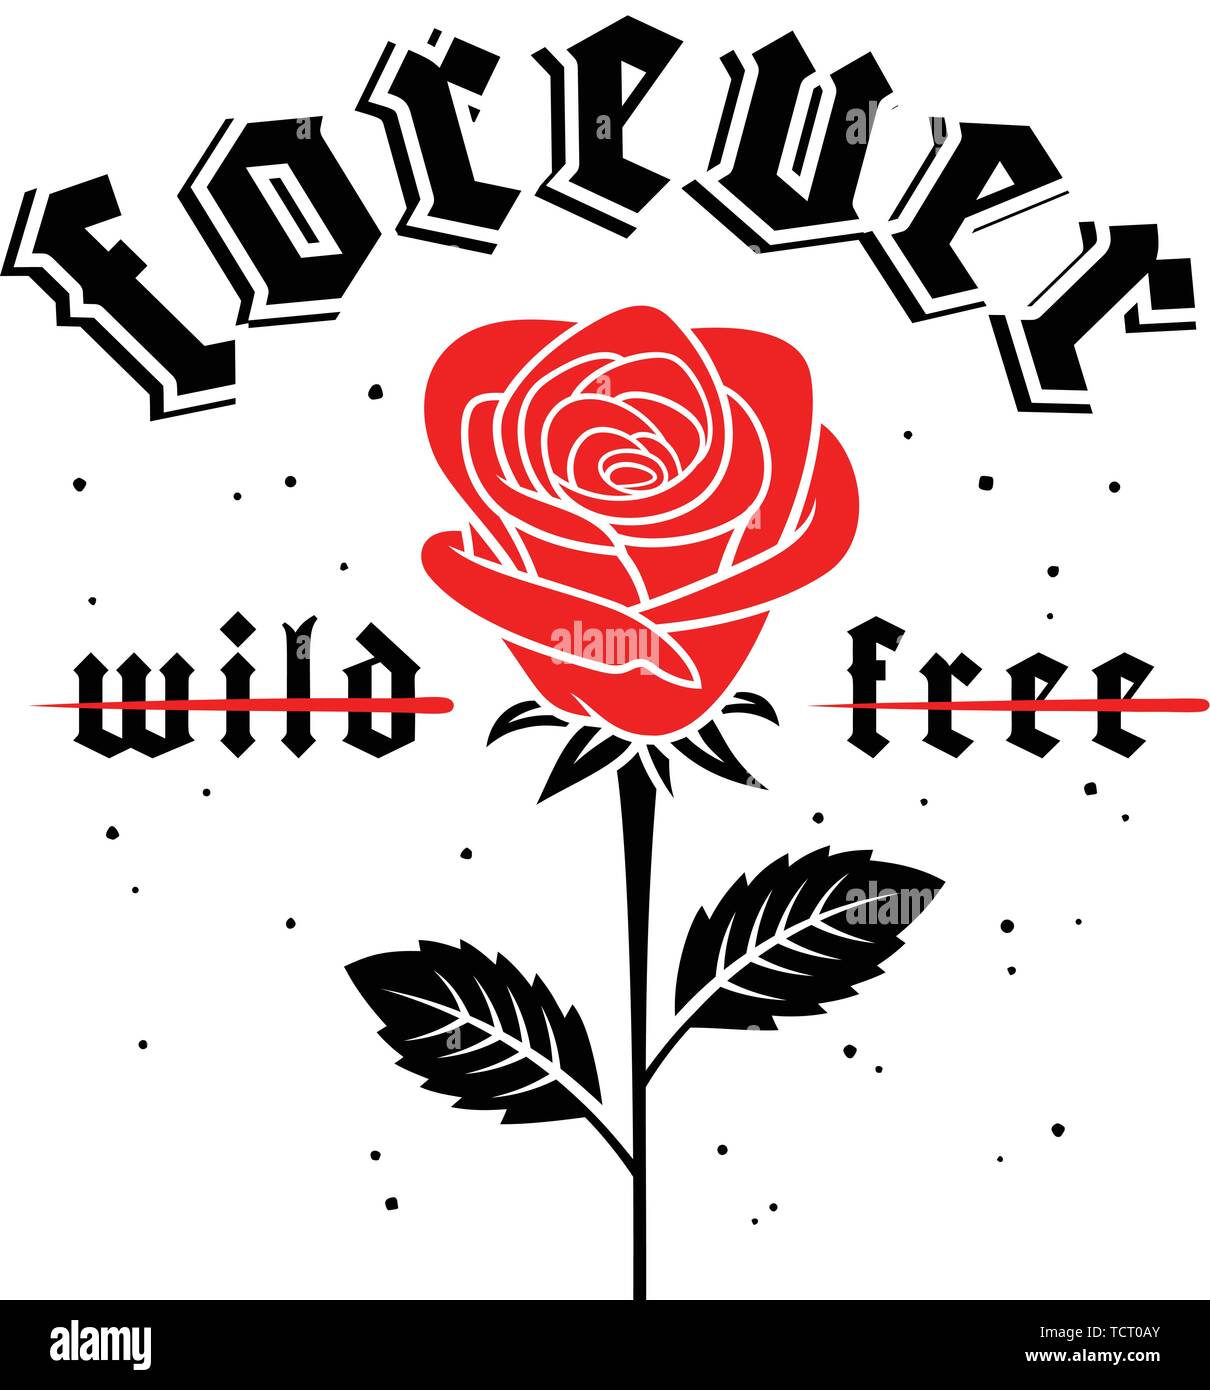 Grafik Slogan mit rote Rose Abbildung im gotischen Stil für t-shirt Druck Design. Vektoren Stock Vektor